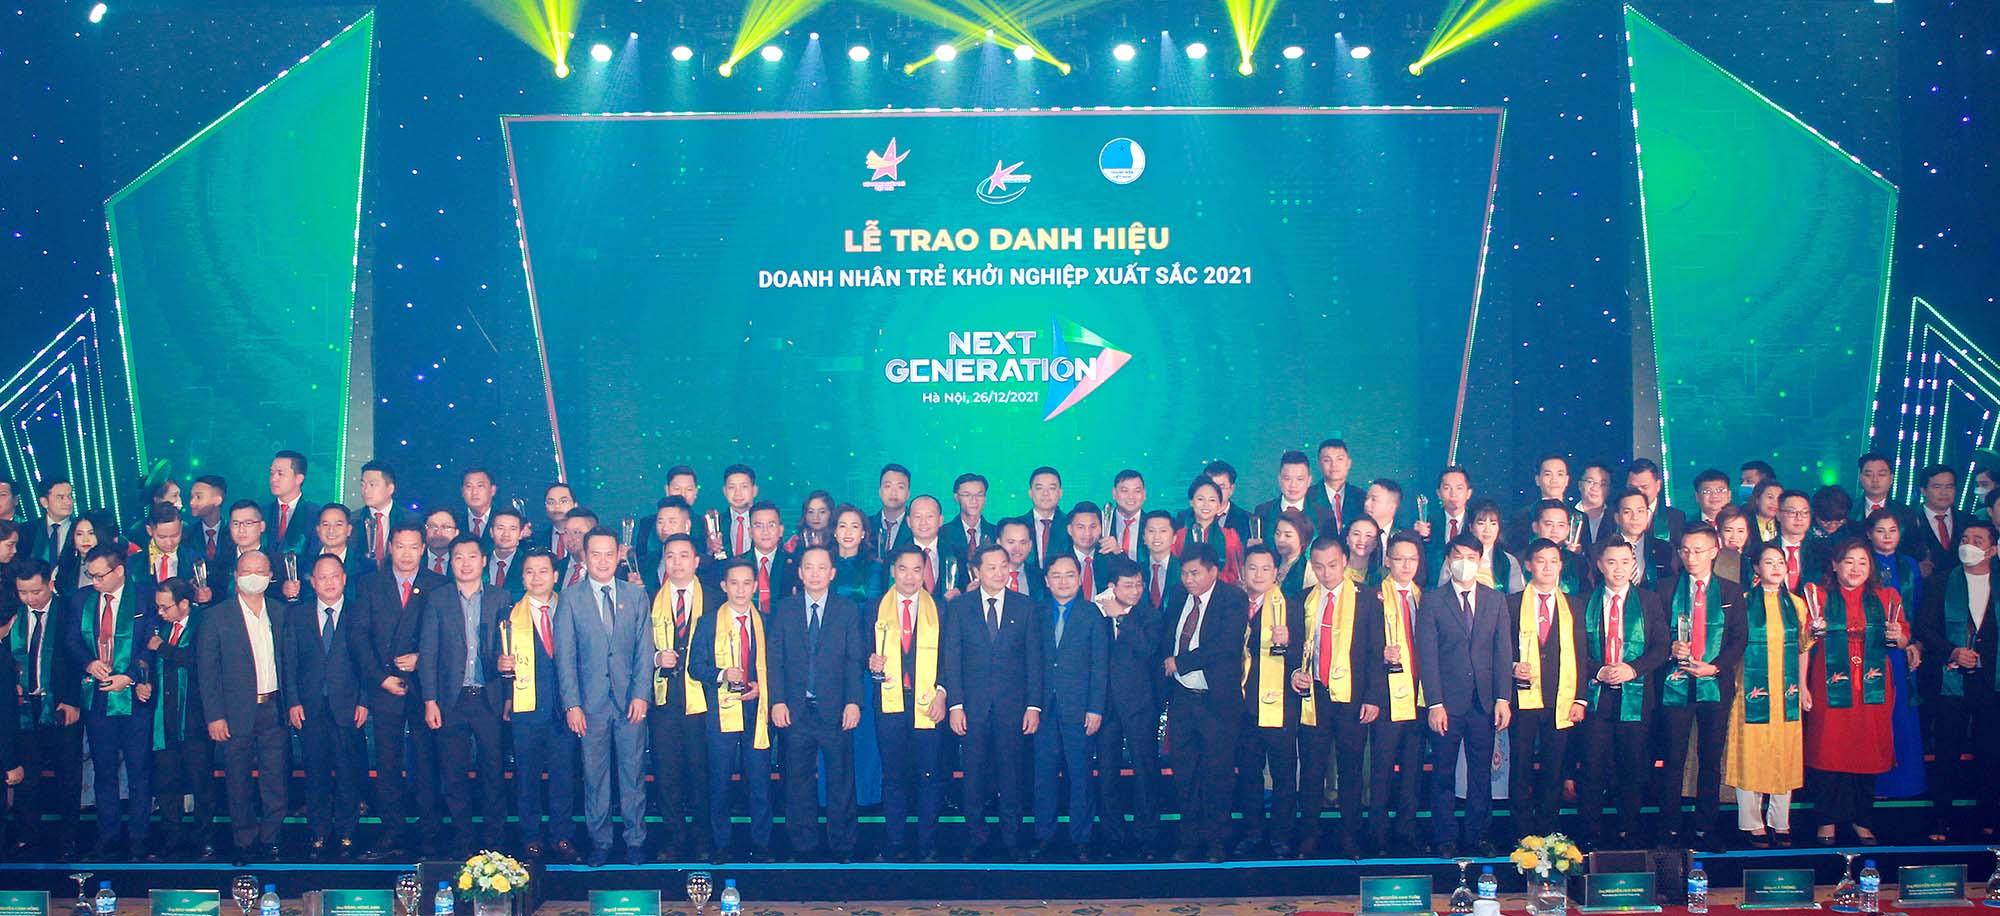 Phó thủ tướng Chính phủ Lê Minh Khái và Bí thư Thứ nhất Trung ương Đoàn Nguyễn Anh Tuấn trao danh hiệu TOP 10 “Doanh nhân trẻ khởi nghiệp xuất sắc 2021”.